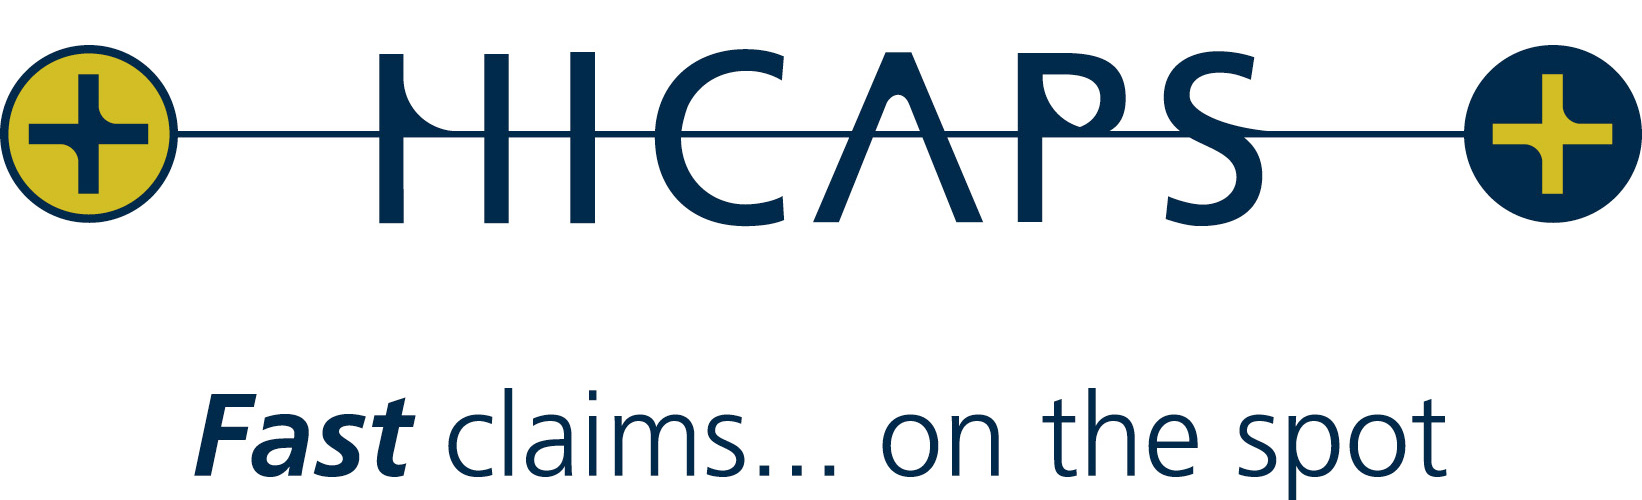 Hicaps logo